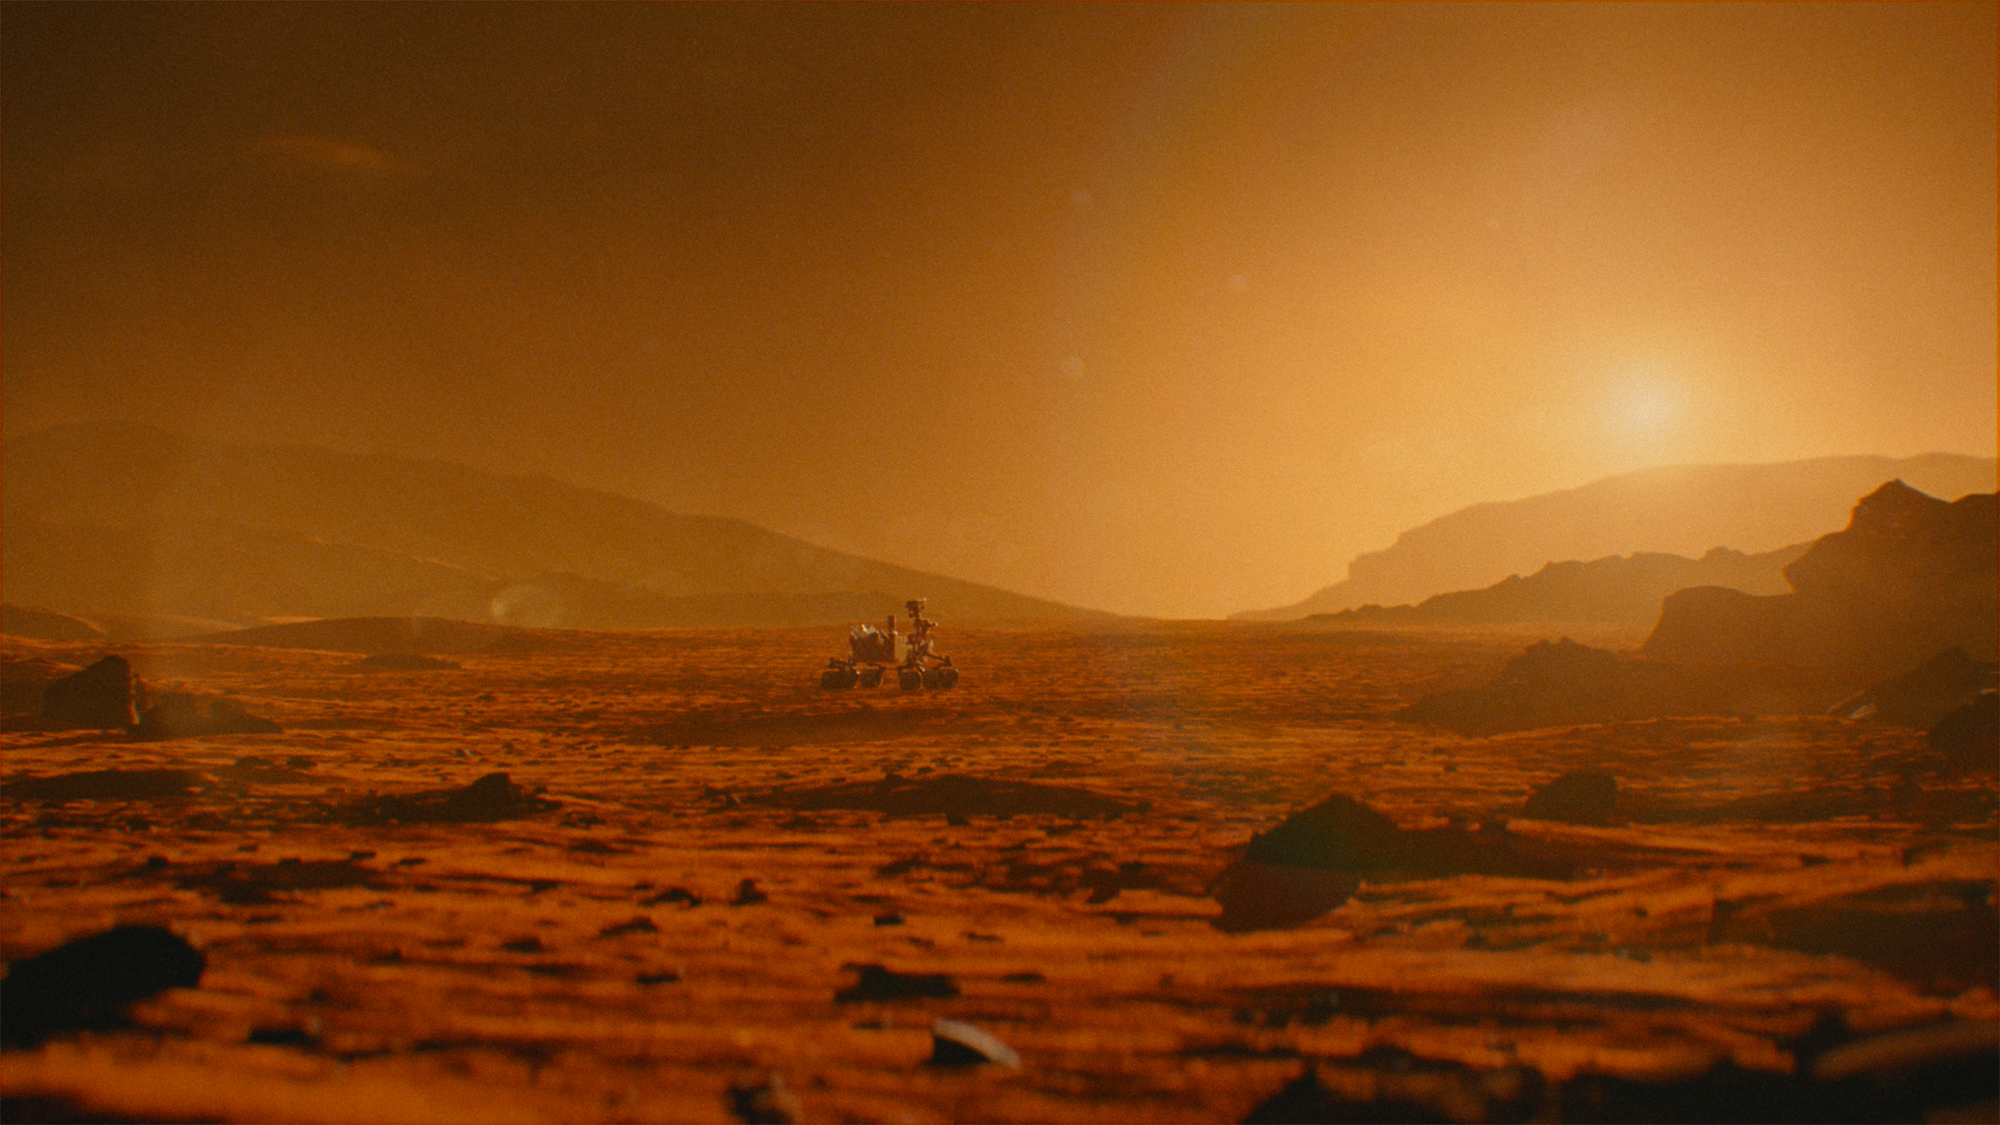 Le rover Curiosity de la Nasa parcoure le cratère Gale et ses environs depuis 10 ans. © Husqvarna, Nasa